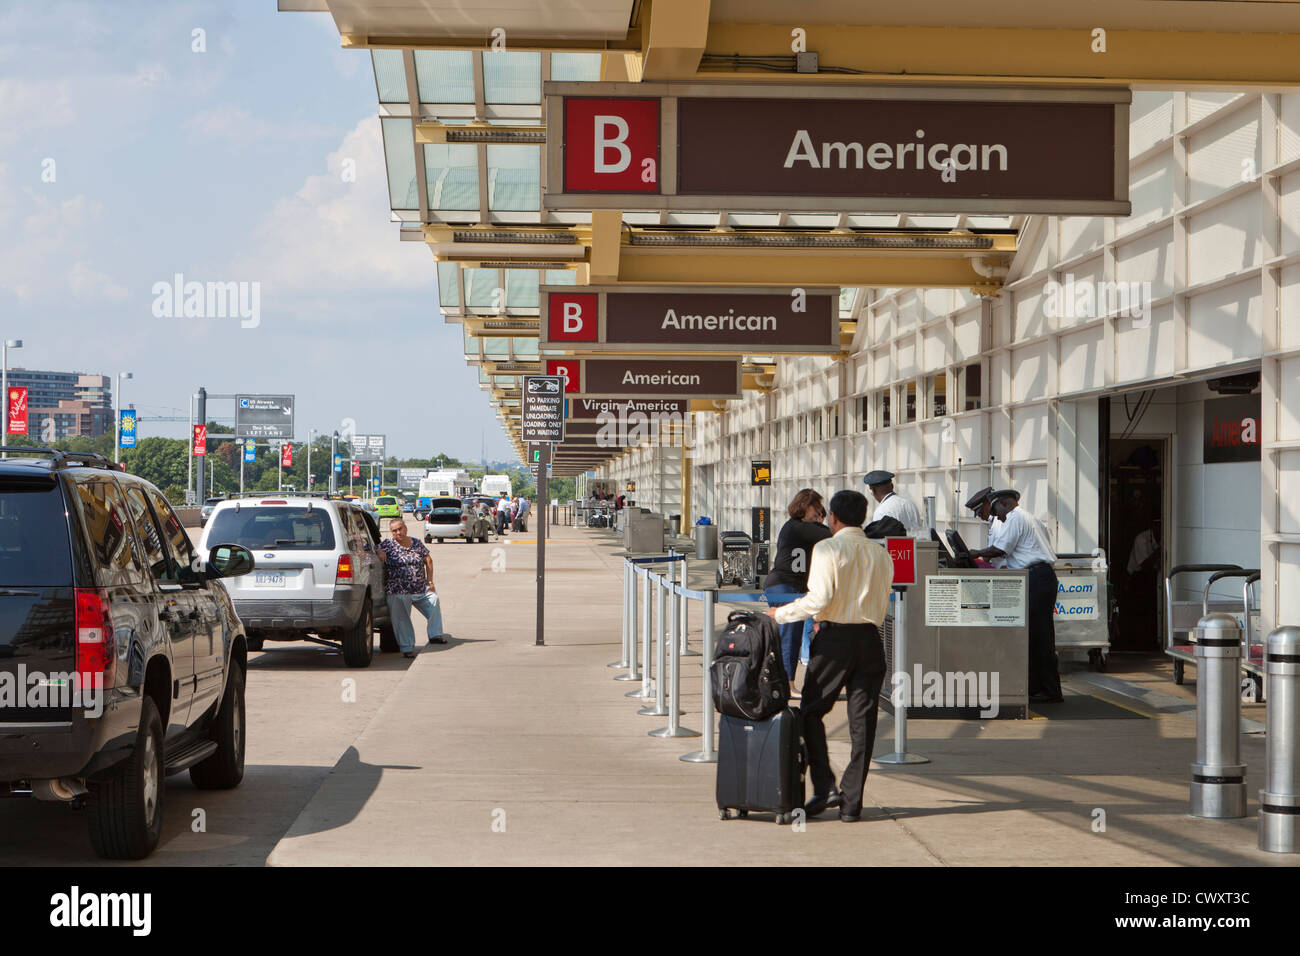 Bagages en bordure de la zone d'enregistrement - Aéroport national Ronald Reagan (DCA) - Washington, DC USA Banque D'Images